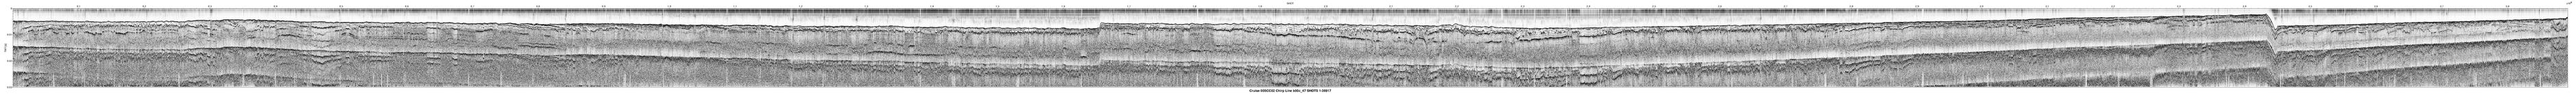 00SCC02 b00c_47 seismic profile image